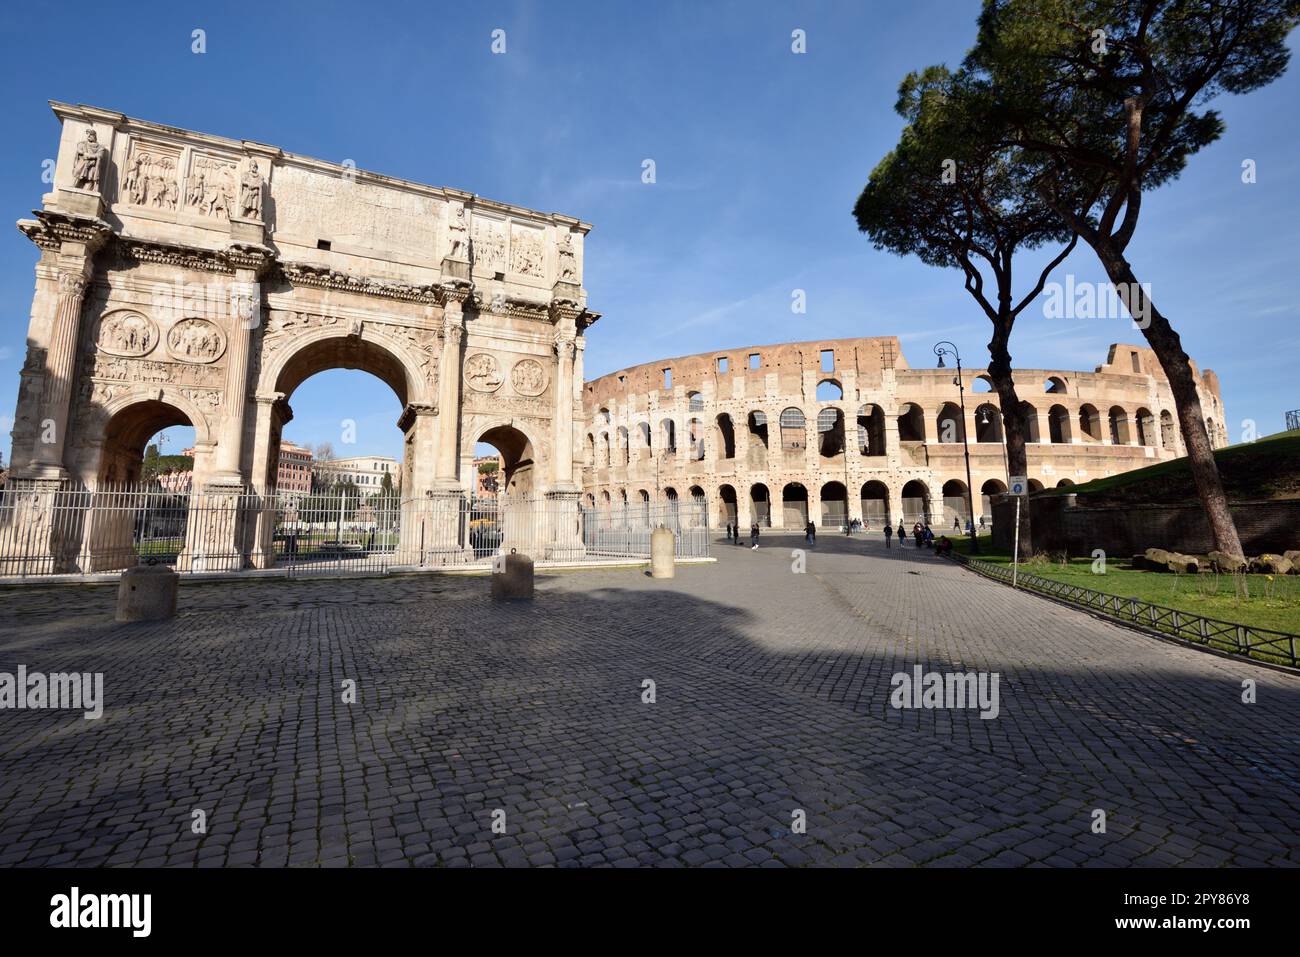 Italie, Rome, arche de Constantin et Colisée Banque D'Images